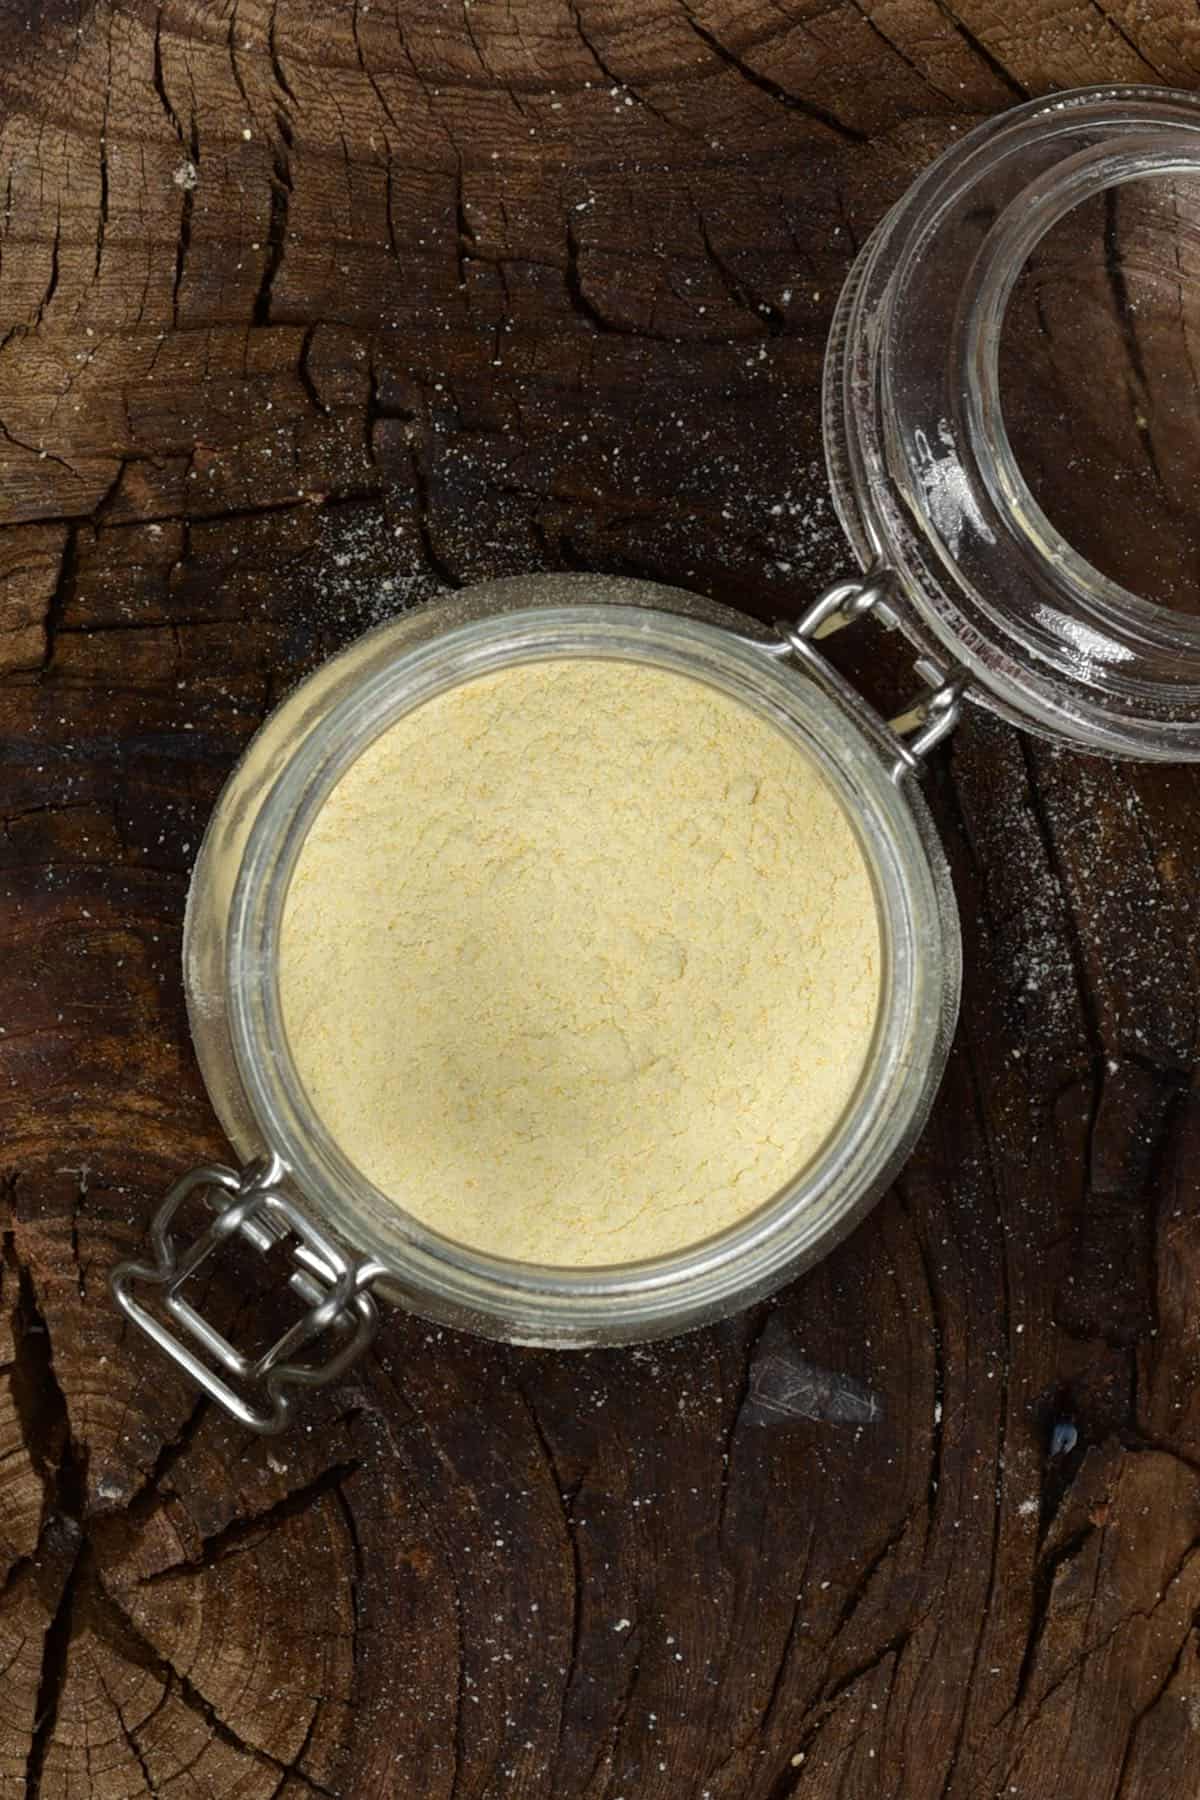 Garlic powder in a jar